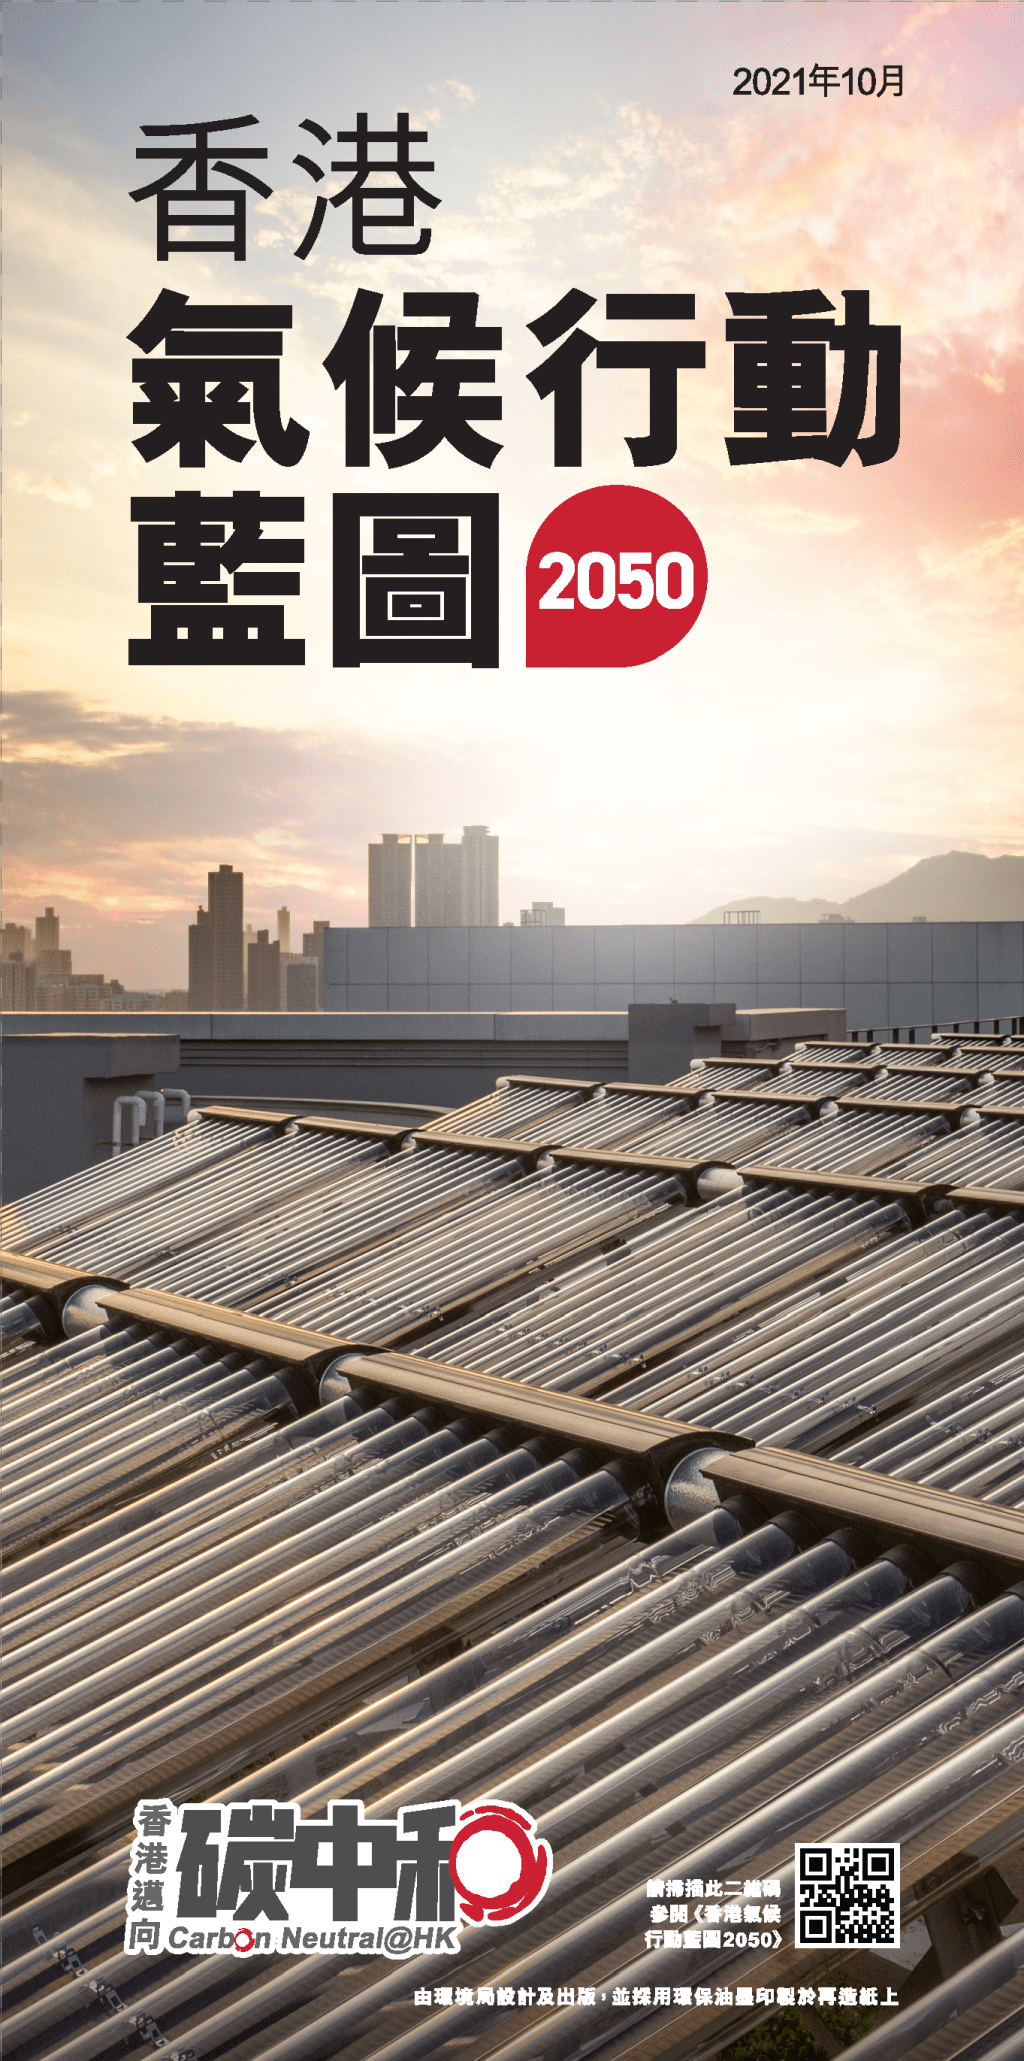 香港亦力争2050年前实现碳中和，推出《香港气候行动蓝图2050》。资料图片